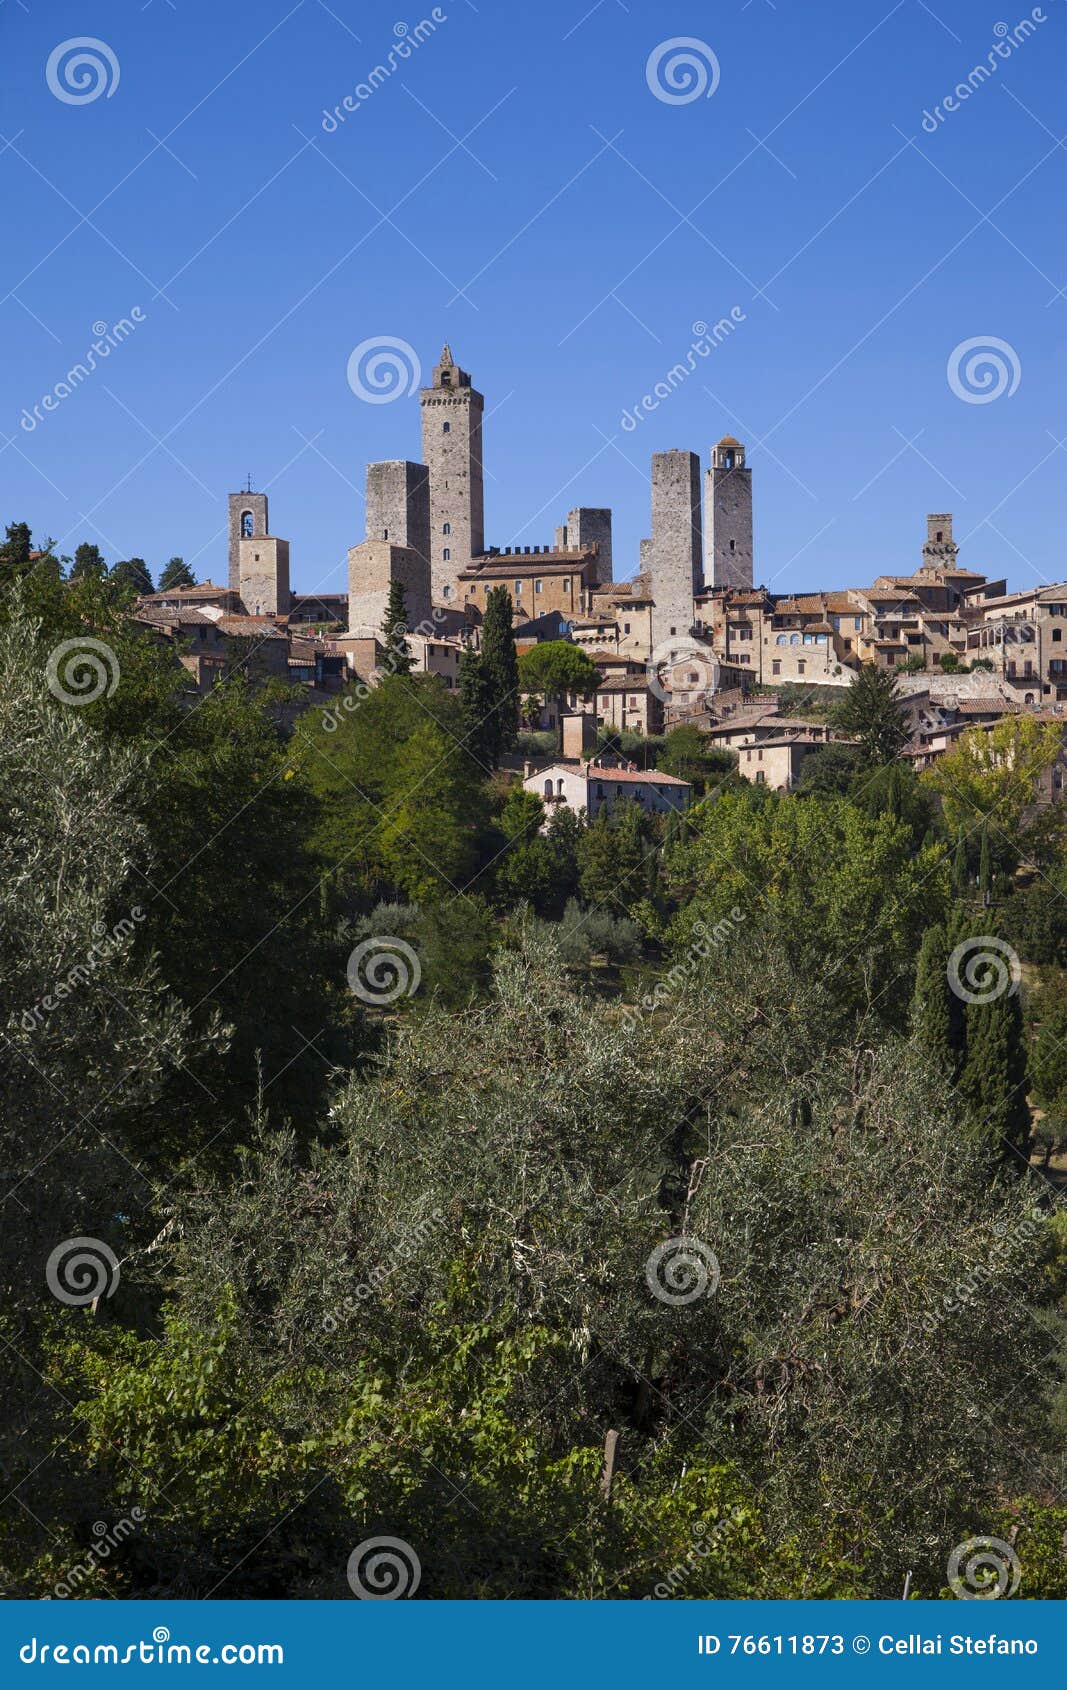 italy,tuscany, san gimignano village